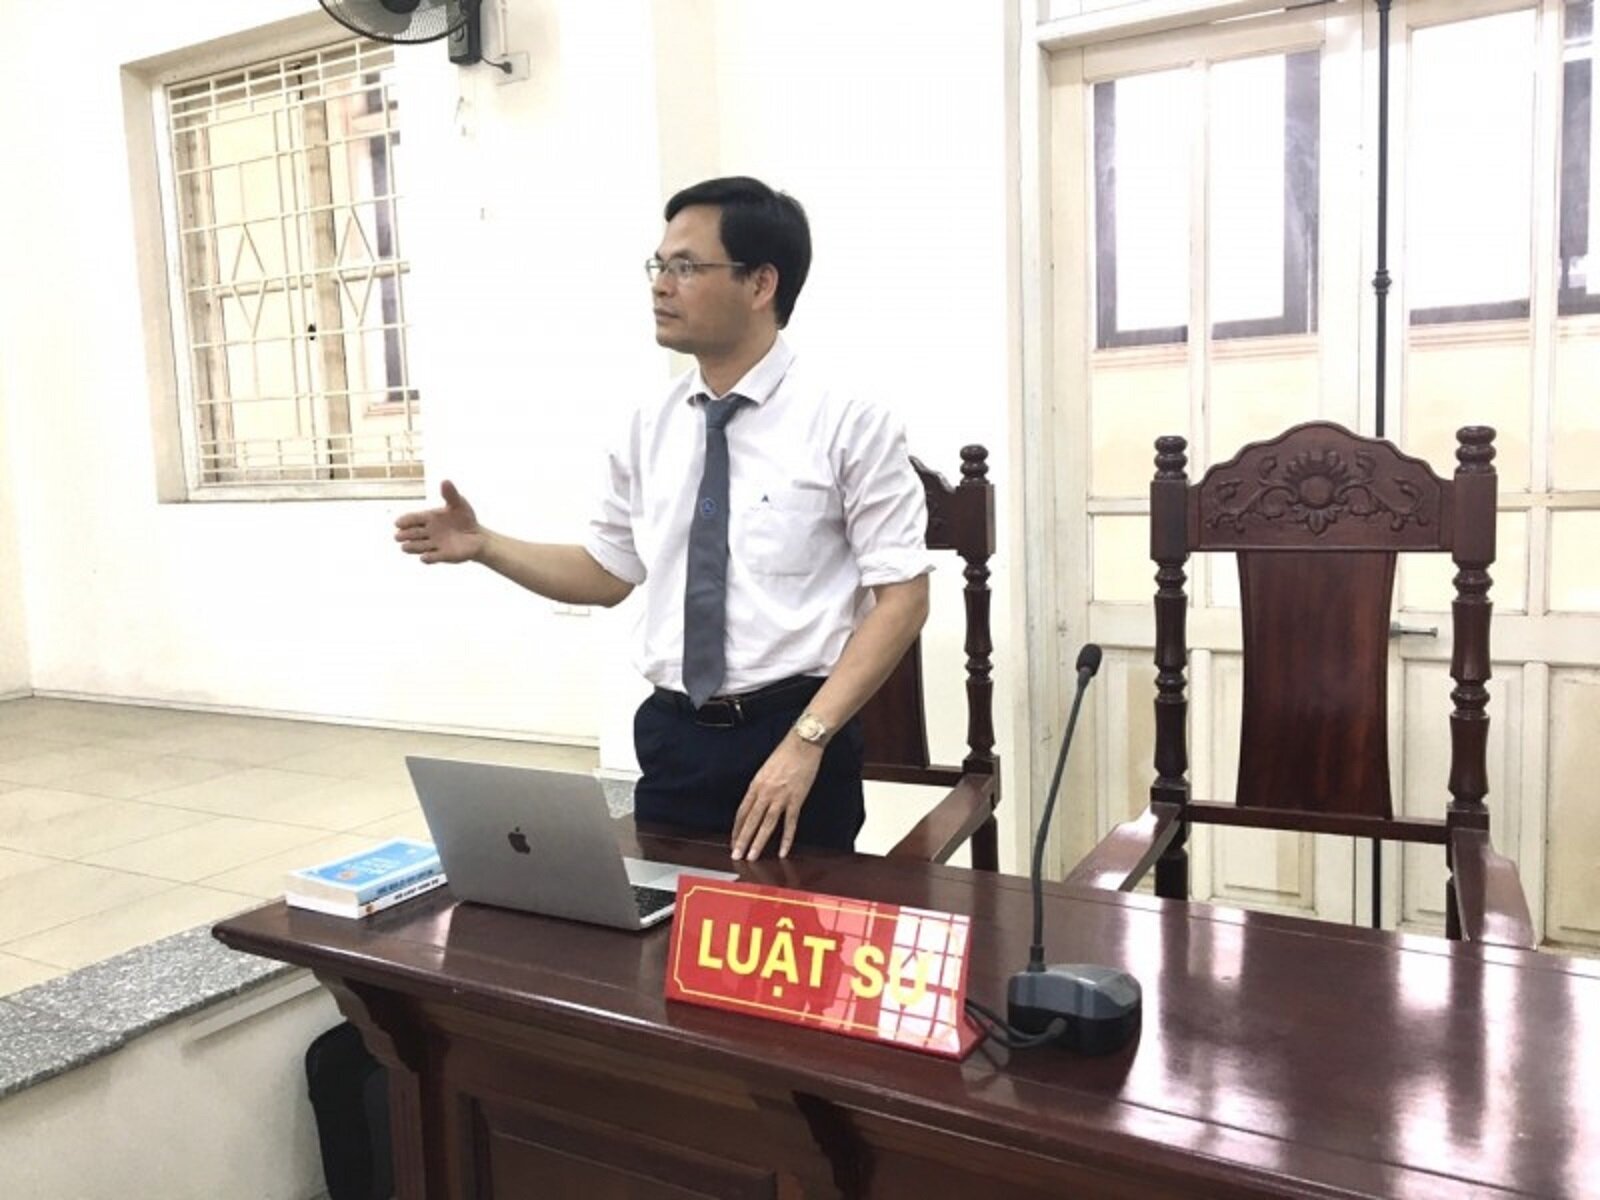 Luật sư Nguyễn Trọng Hoàng, Công ty Luật Chính pháp Đồng Tâm, Đoàn Luật sư Thành phố Hà Nội